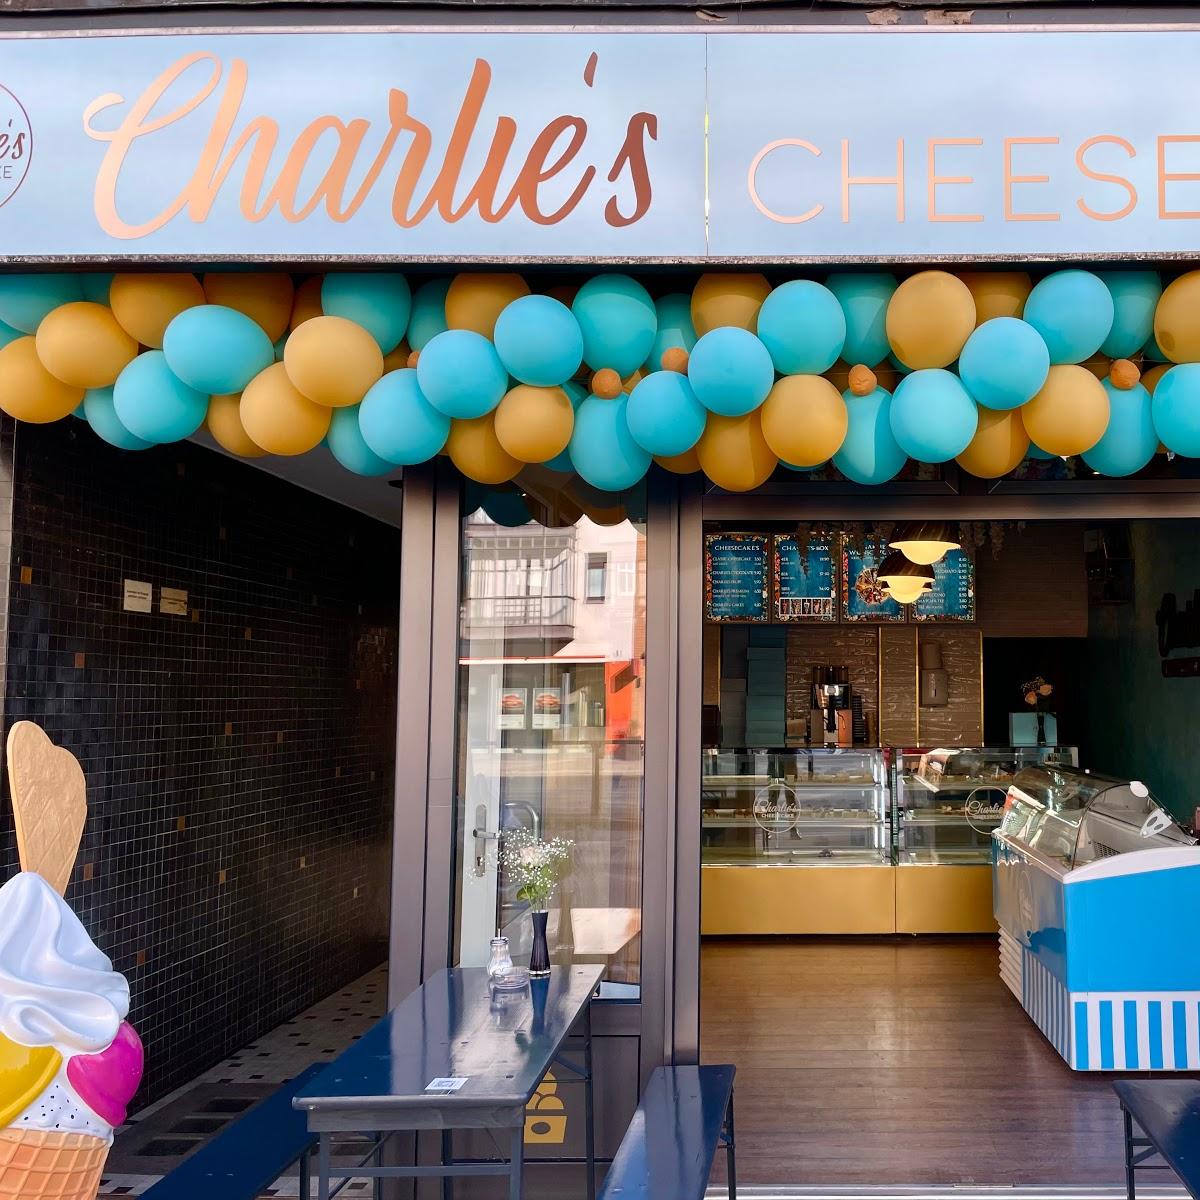 Restaurant "Charlie‘s Cheesecake" in Hamburg